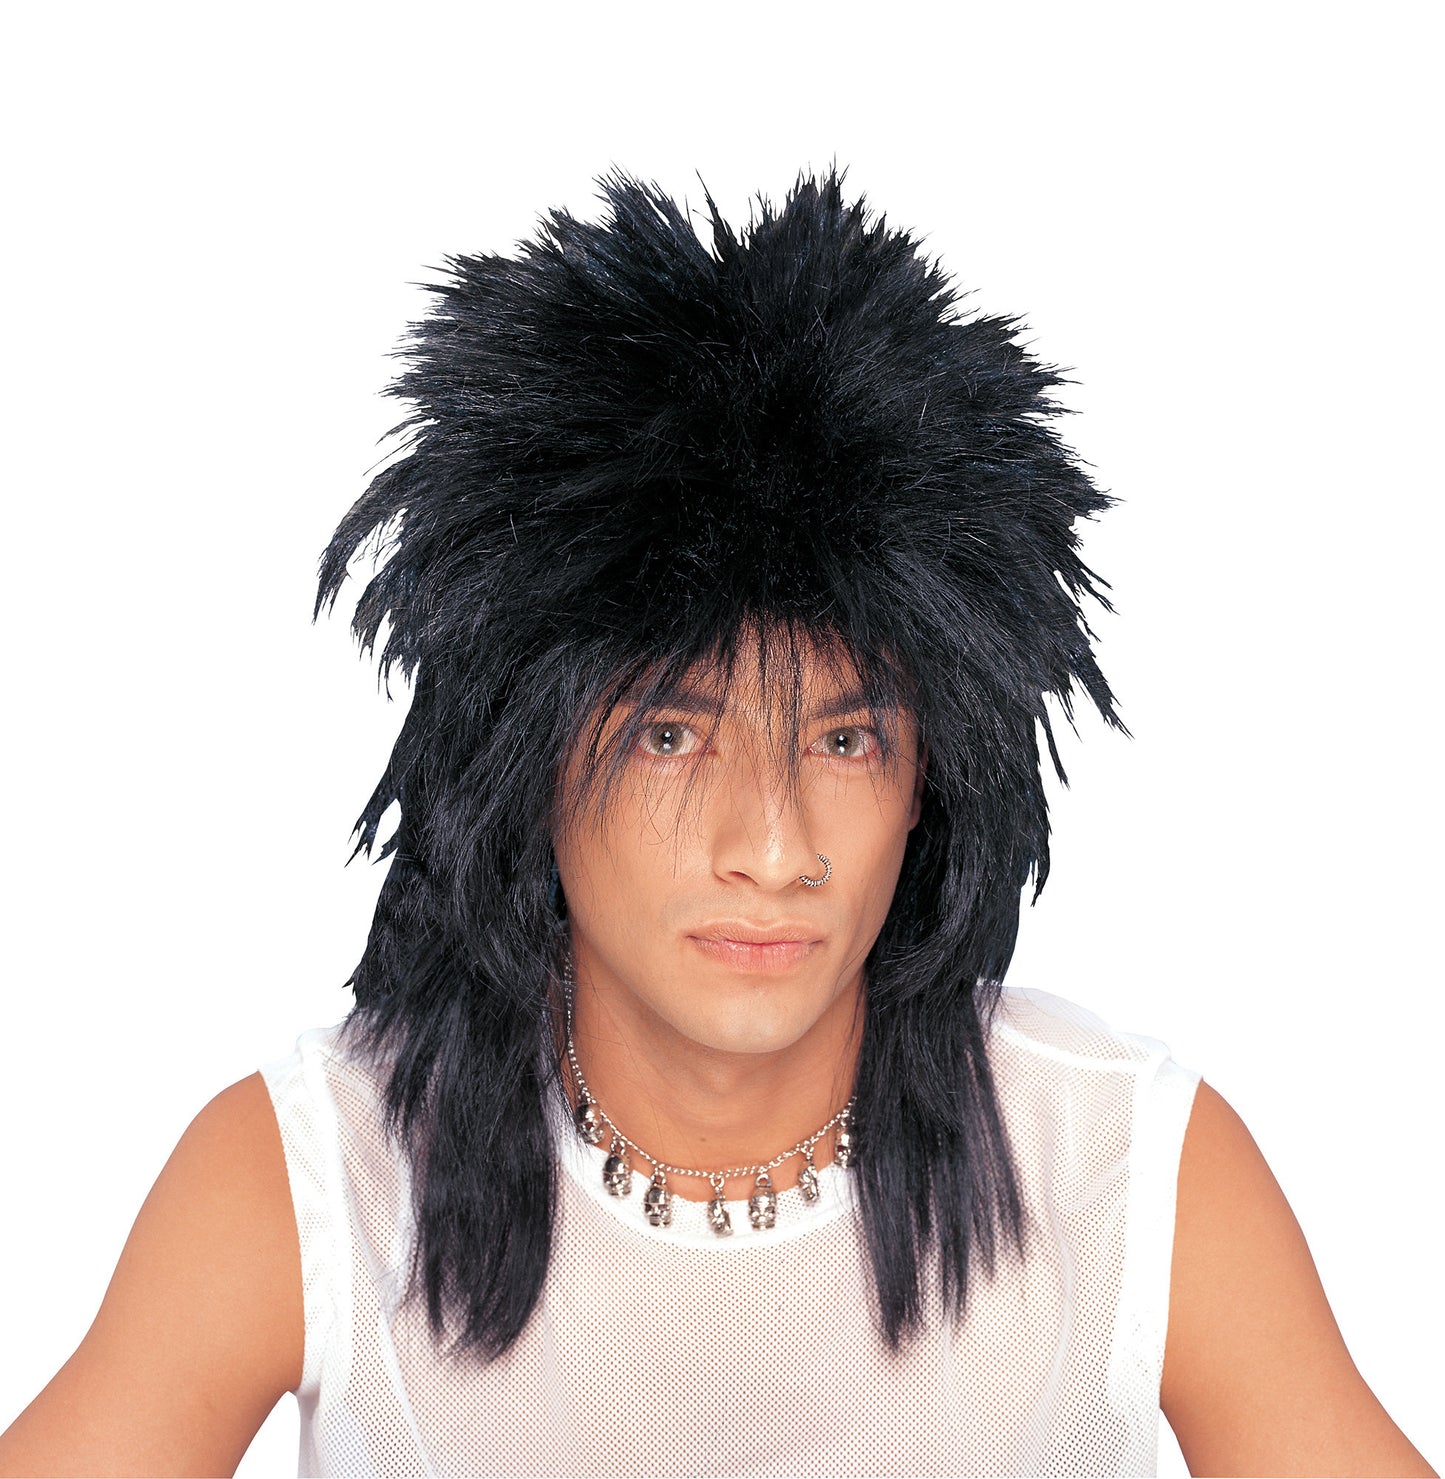 Unisex Rocker Wig: Long